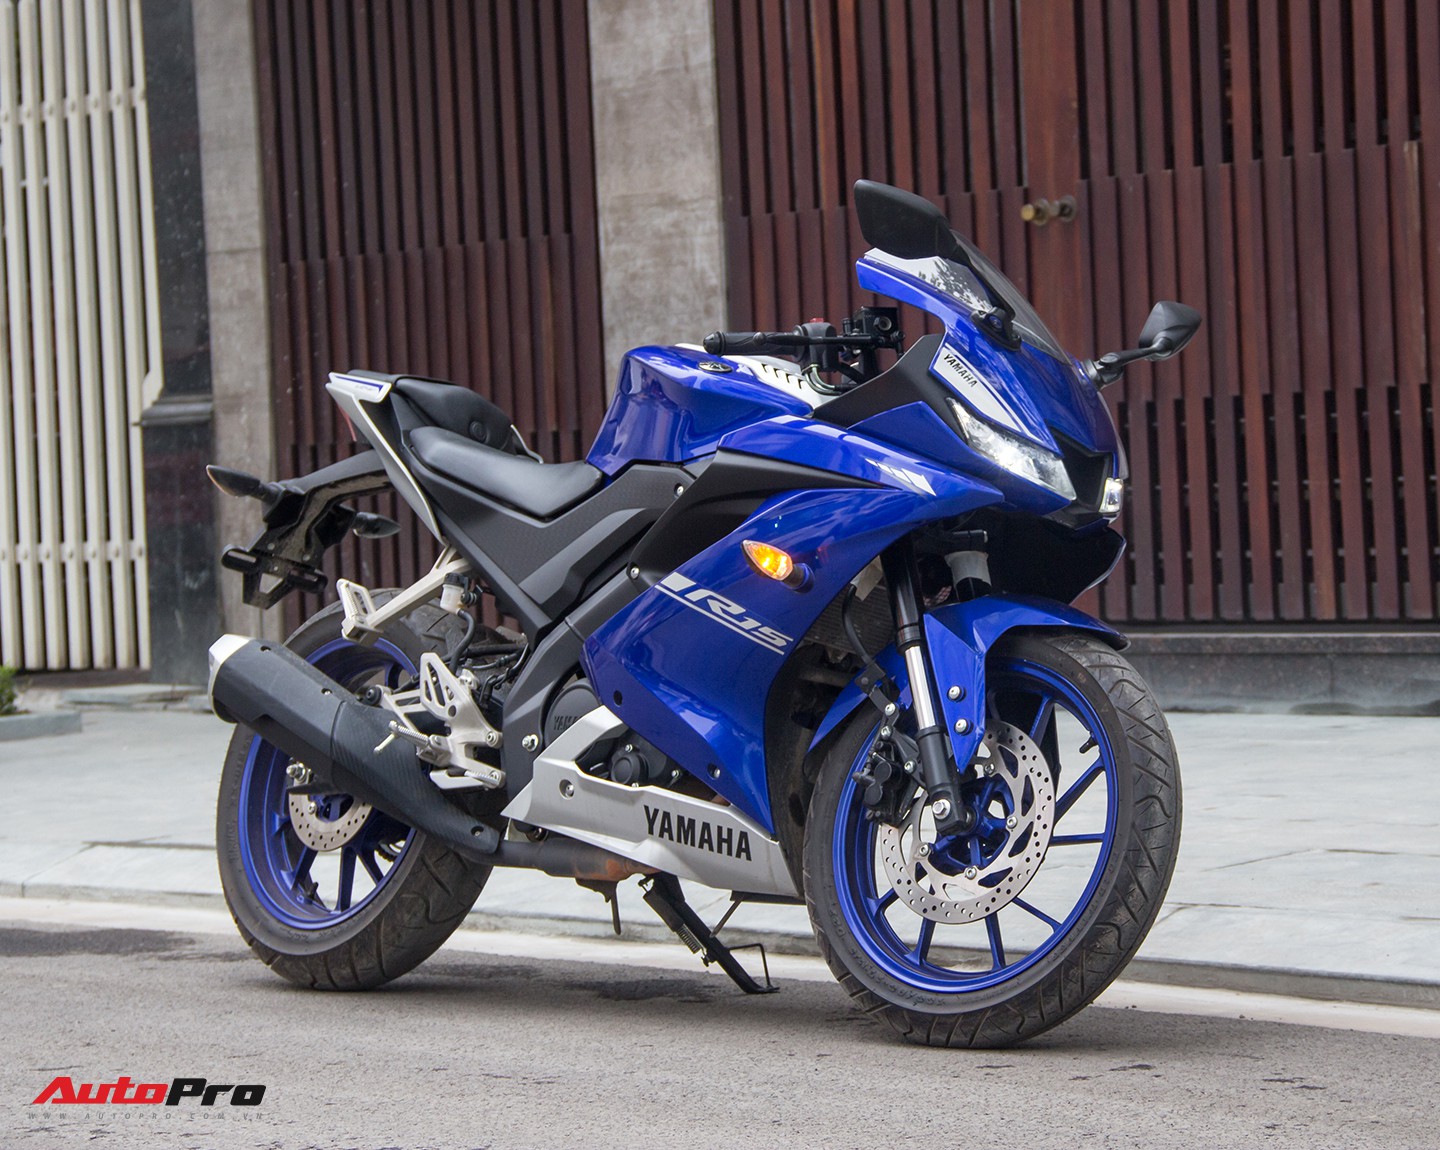 Đấu xe chính hãng Yamaha R15 nhập khẩu ngoài giảm giá còn 84 triệu đồng